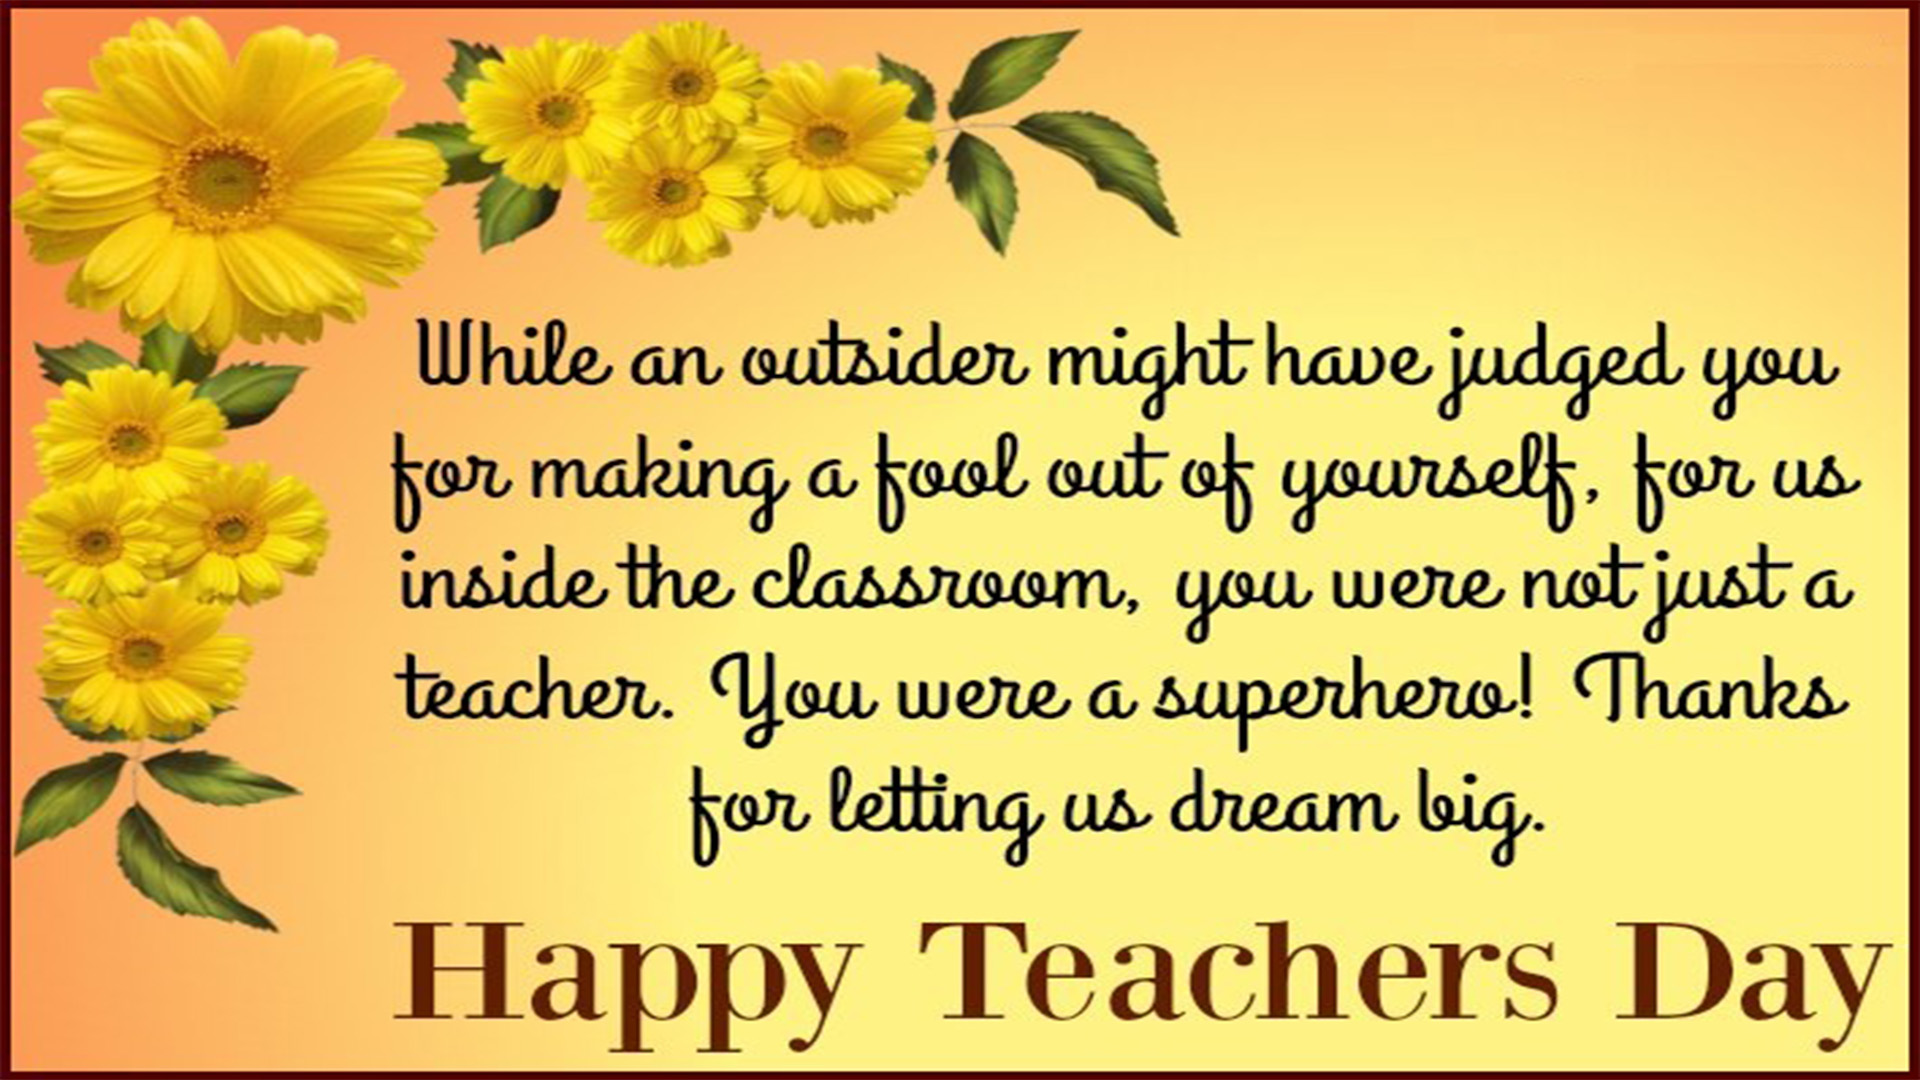 happy teachers day 2018 image